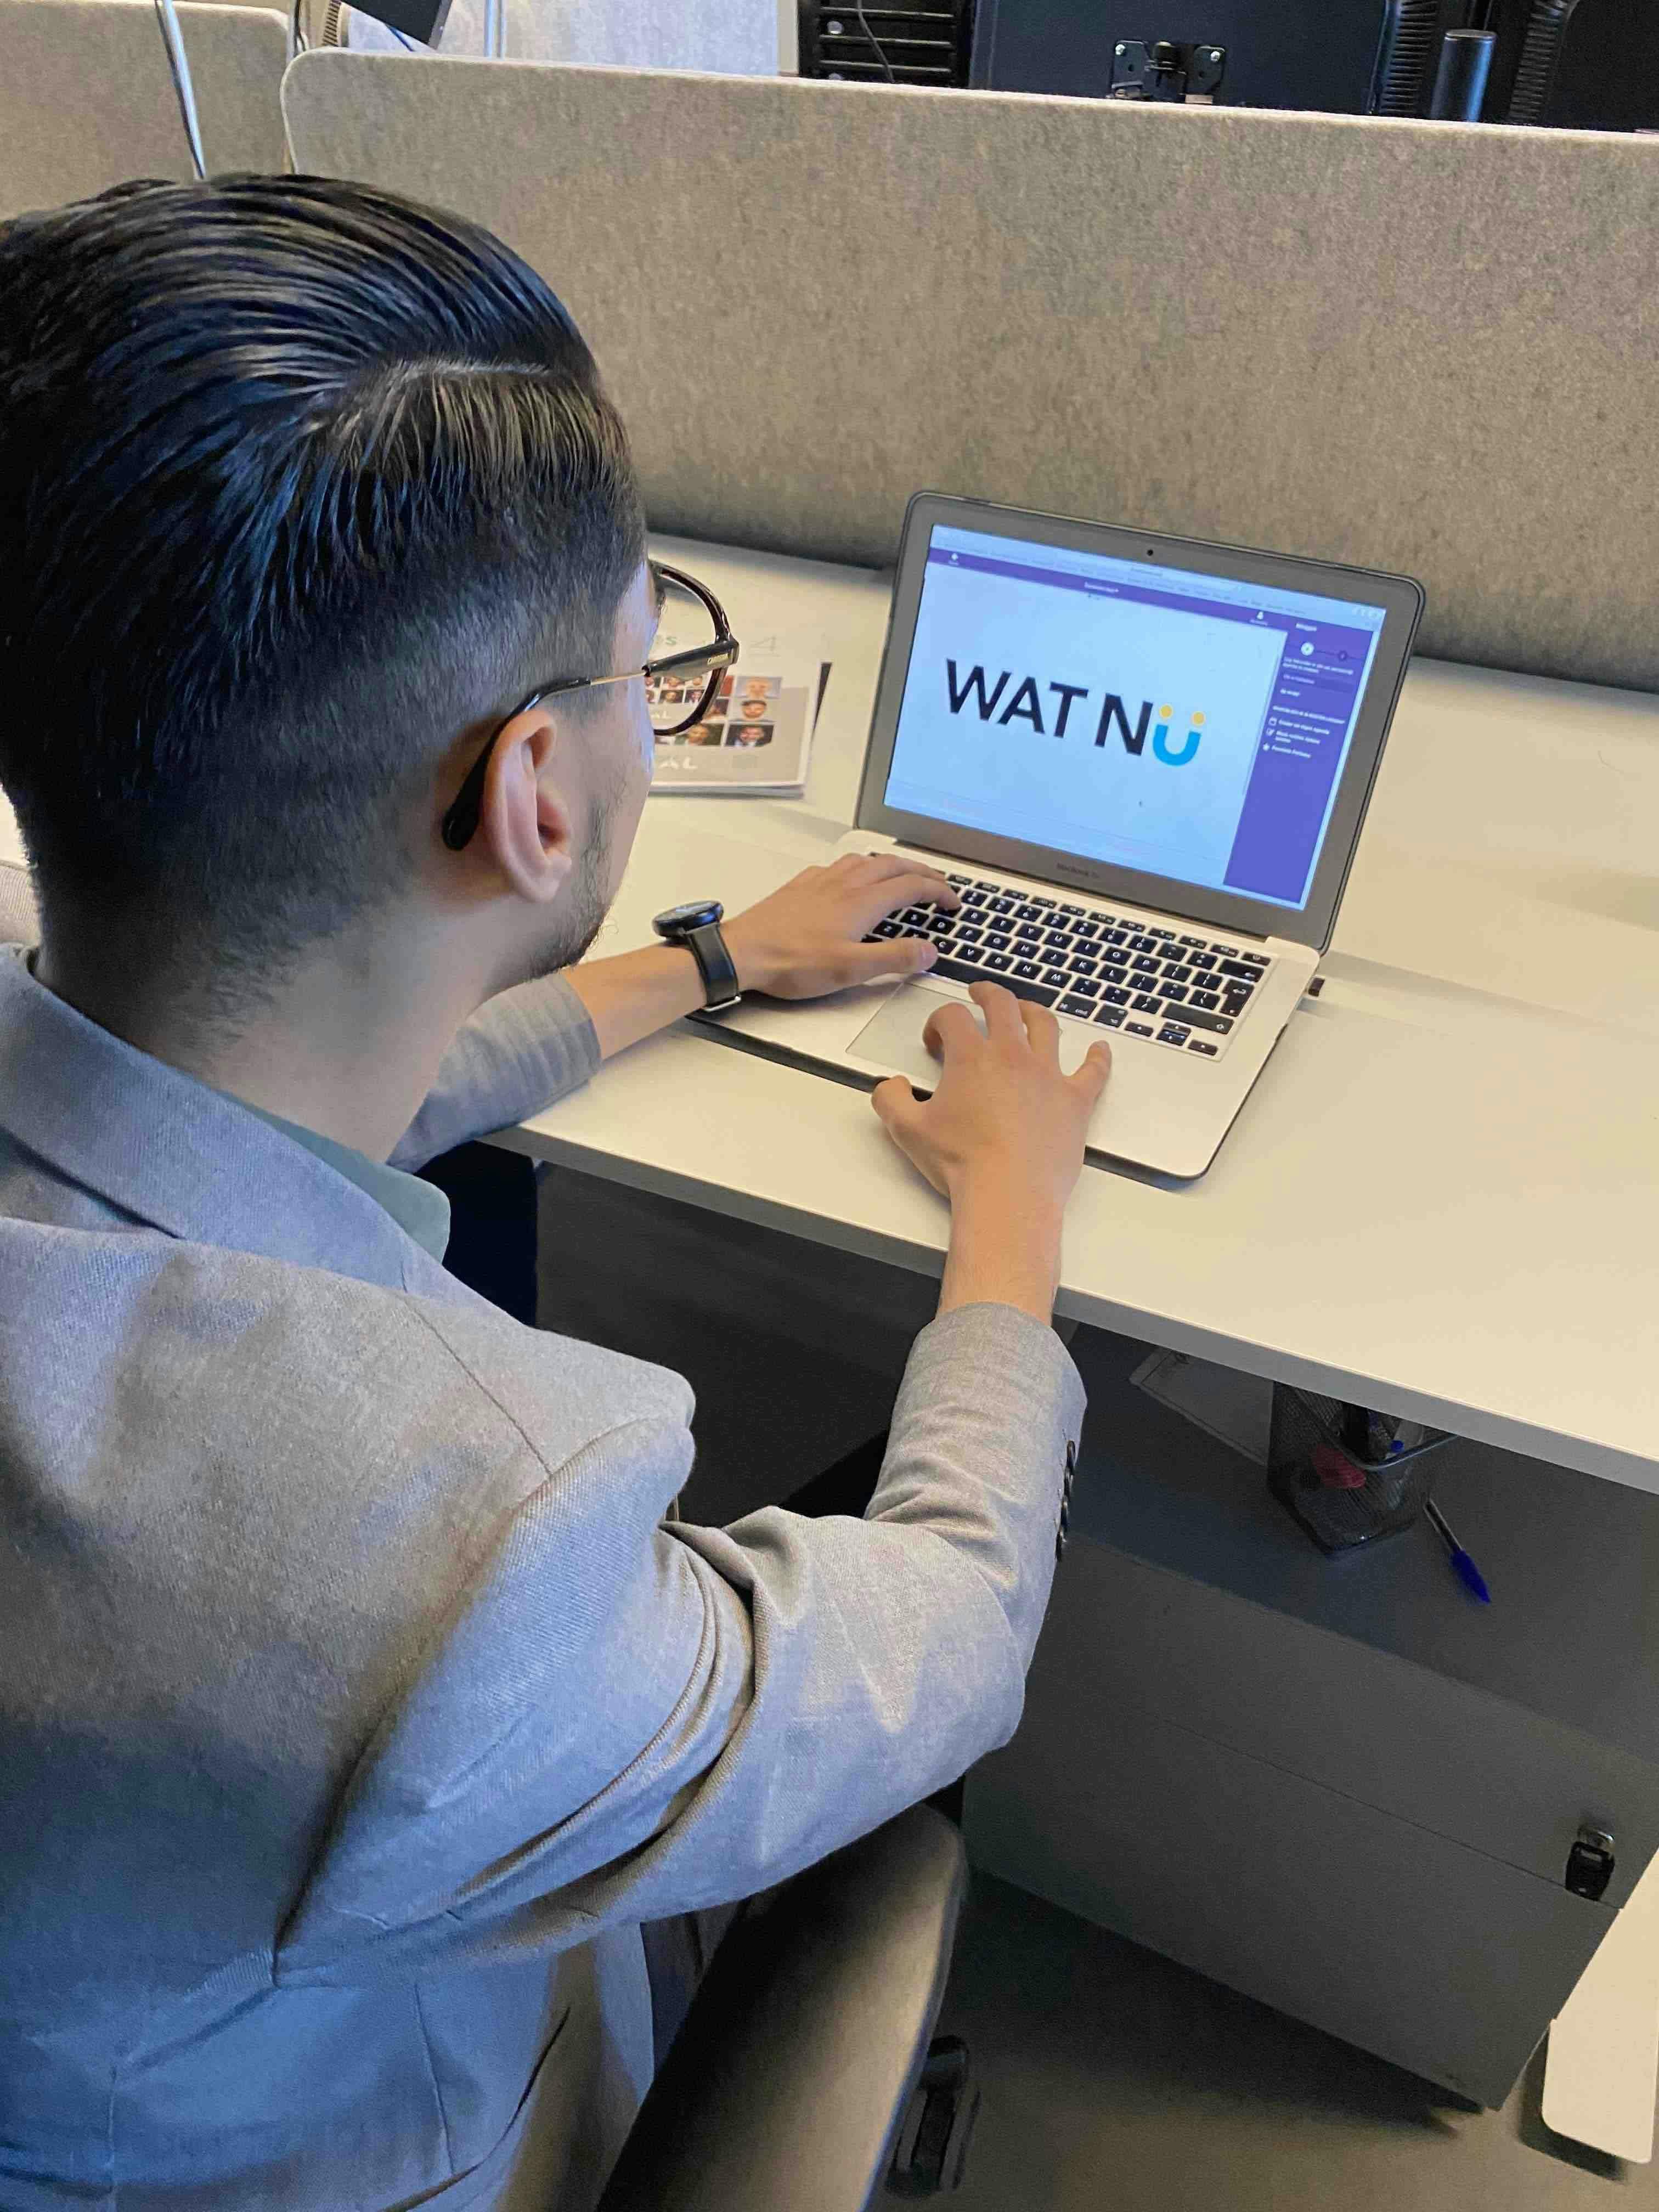 Man achter laptop bij bureau met de tekst 'wat nu'